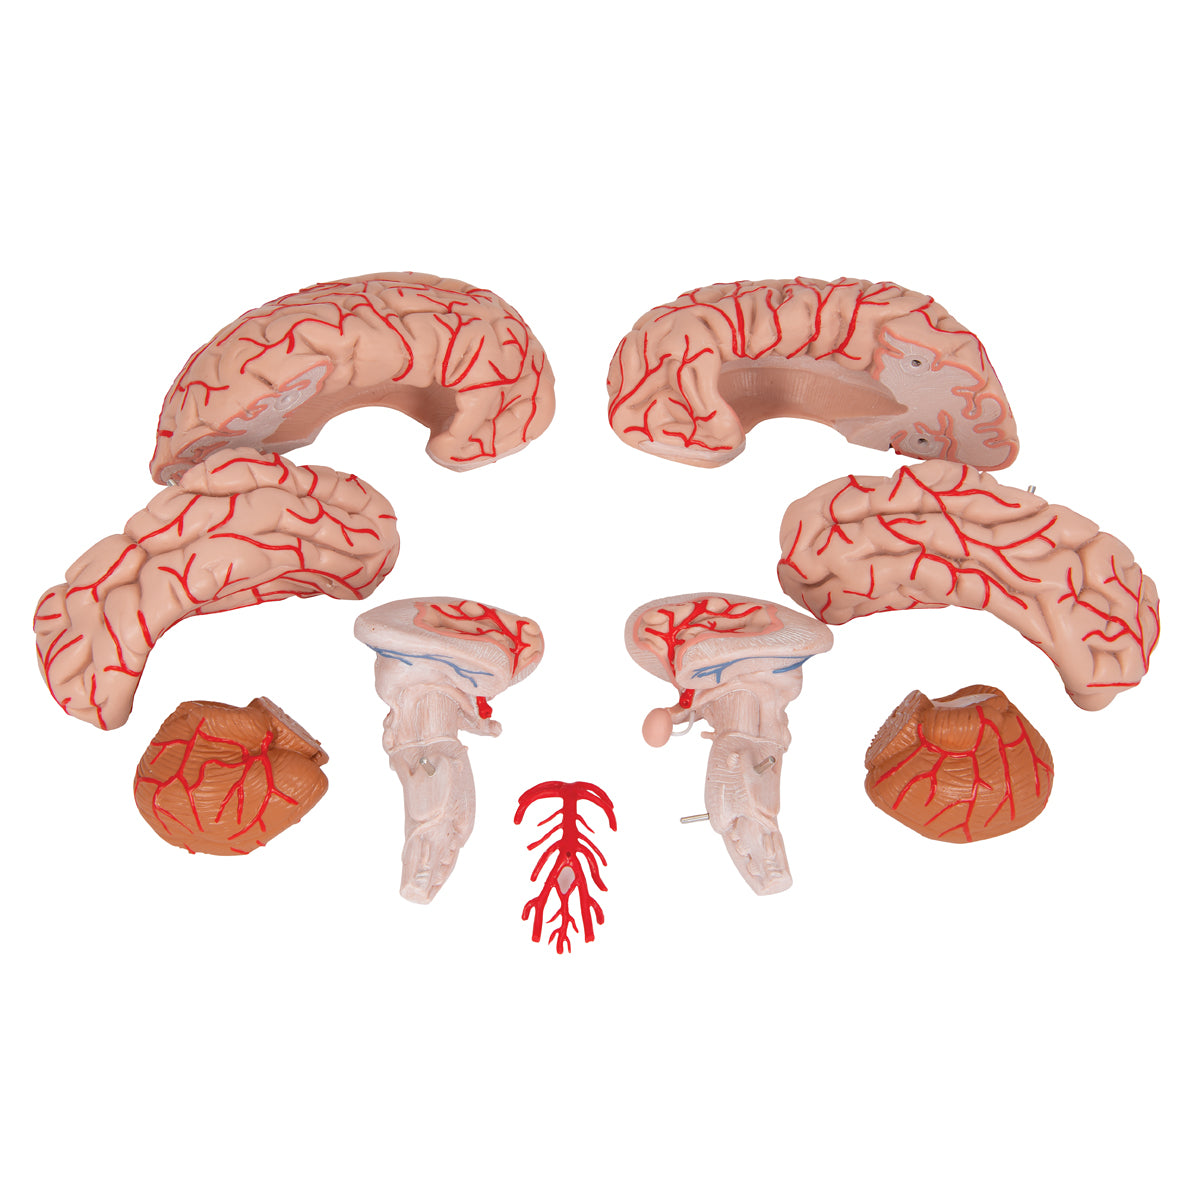 Hjärnmodell som även visar artärer. Kan delas upp i 9 delar